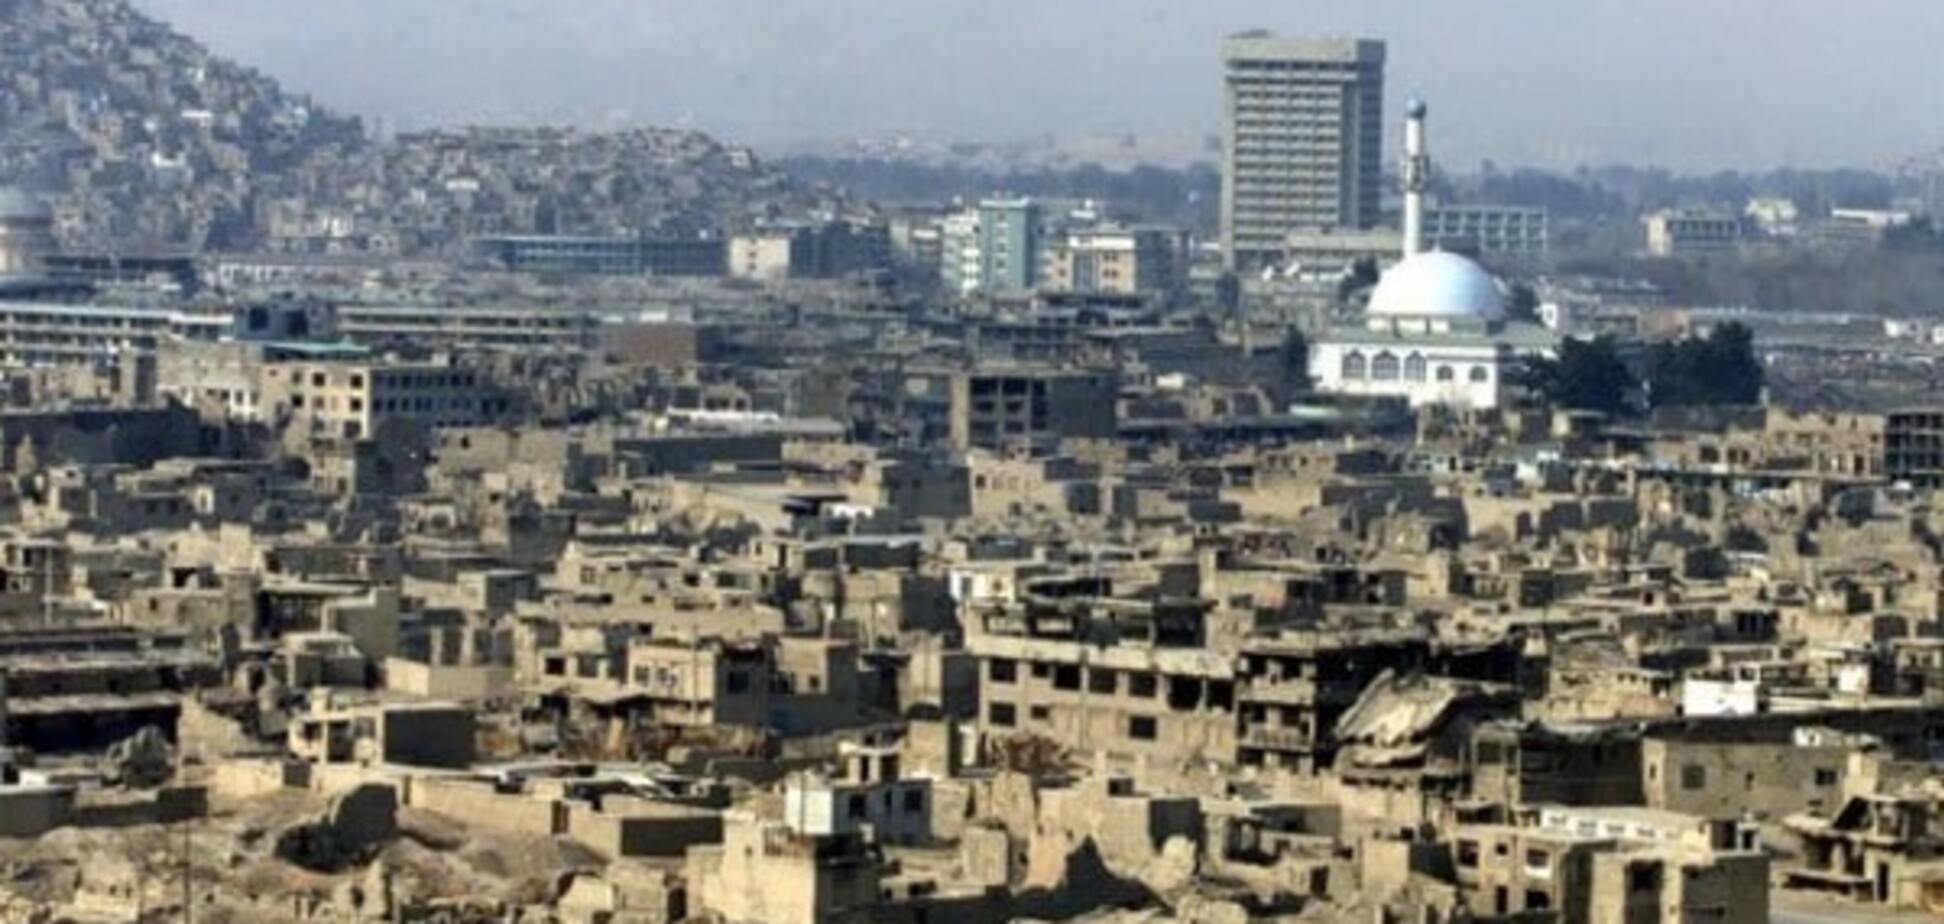 Серия мощных взрывов потрясла дипломатический район Кабула